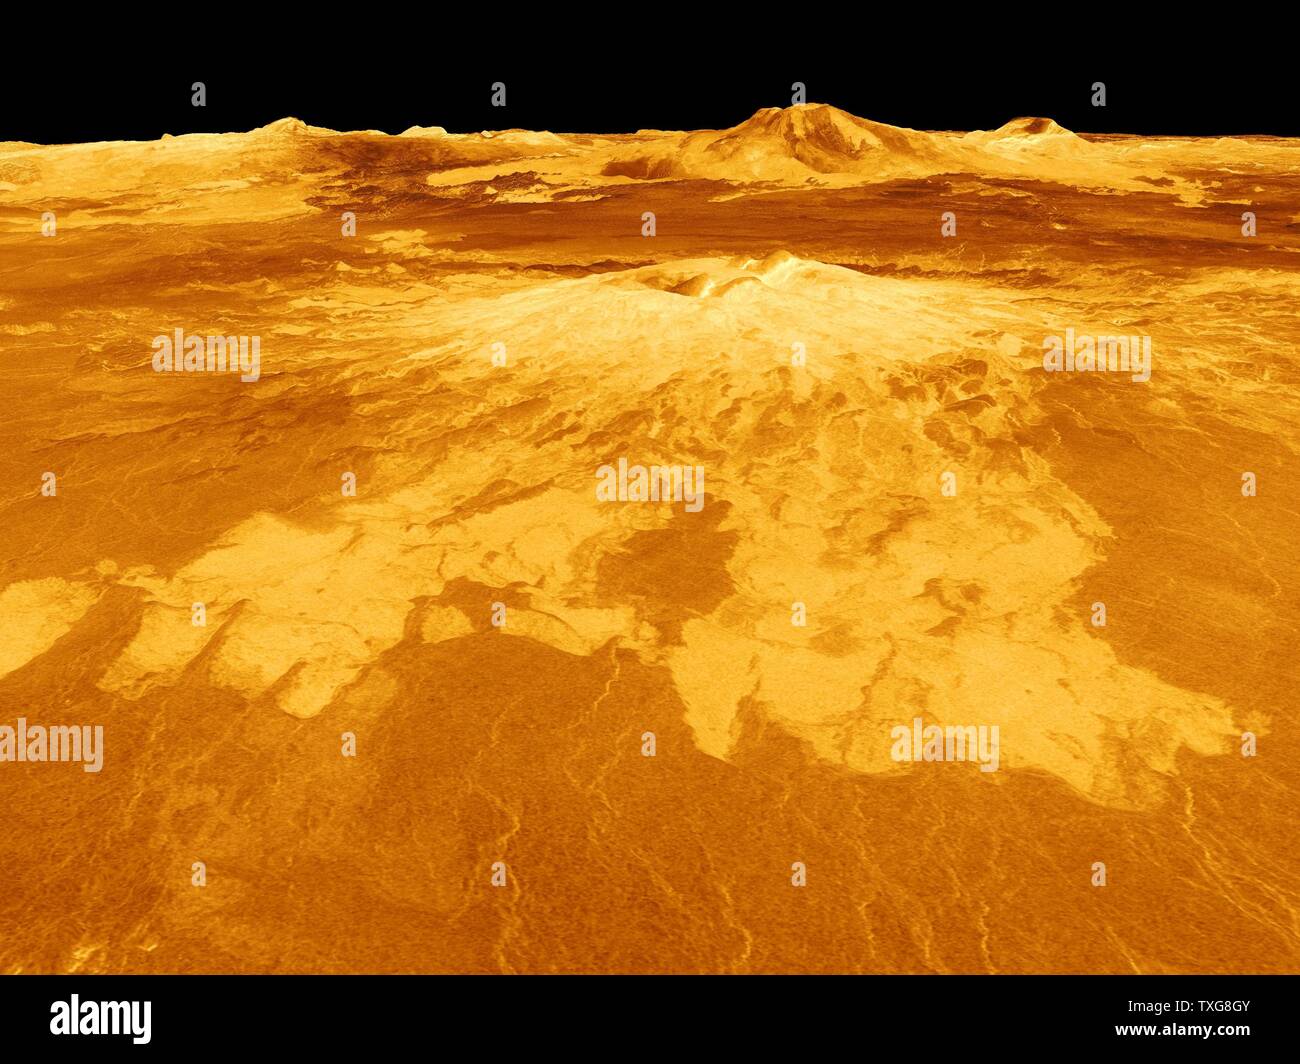 Vue générée par l'ordinateur de surface de la planète Vénus dominée par le volcan Sapas Mons. Les coulées de lave s'étendent sur des centaines de kilomètres à travers les plaines fracturées montre le premier plan Crédit NASA Banque D'Images